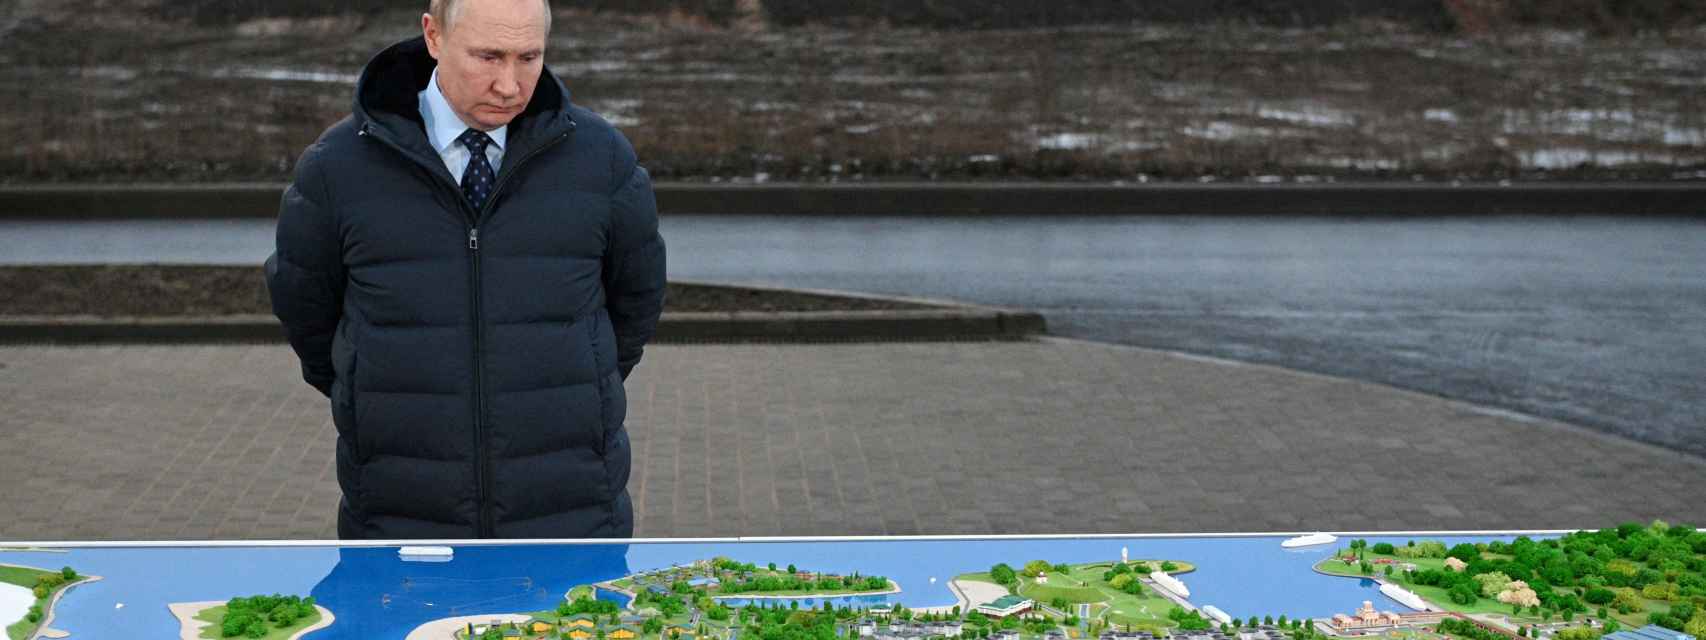 El presidente de Rusia, Vladímir Putin, este lunes en un centro turístico en la región de Tver.